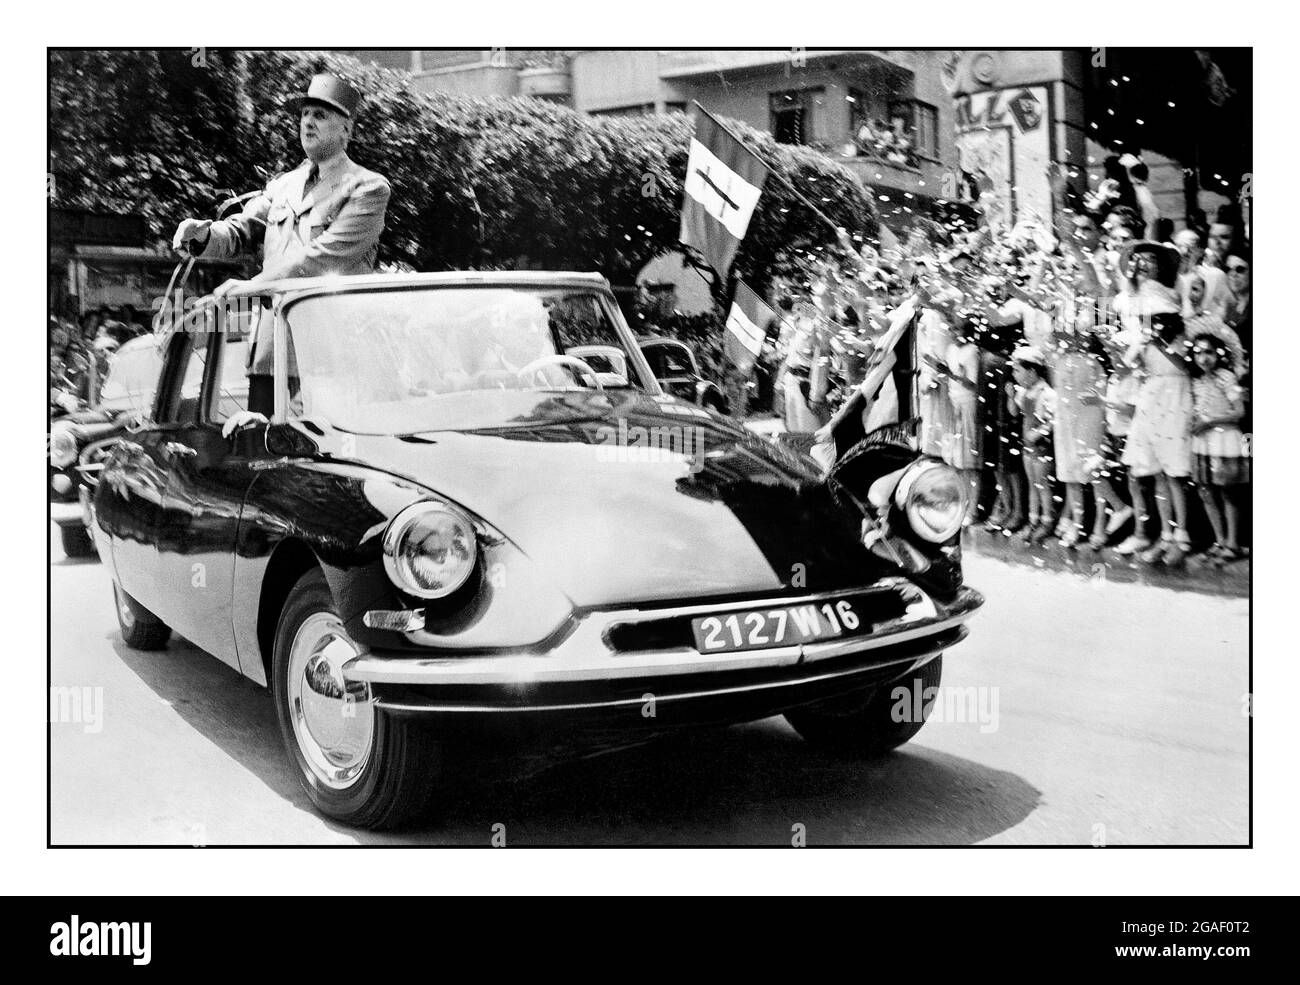 Präsident Charles De Gaulle war ein beliebter Held Frankreichs nach dem Krieg in einem Citroen DS 19. Am 22. August 1962 überlebte der französische Präsident Charles De Gaulle einen der vielen Mordversuche gegen ihn, die ihm durch die Aufführung des Citroen-Automobils des Präsidenten zu verdanken waren: Der aerodynamische Citroen DS 19, der auch als „La Deesse“ (die Göttin) bekannt war. Stockfoto